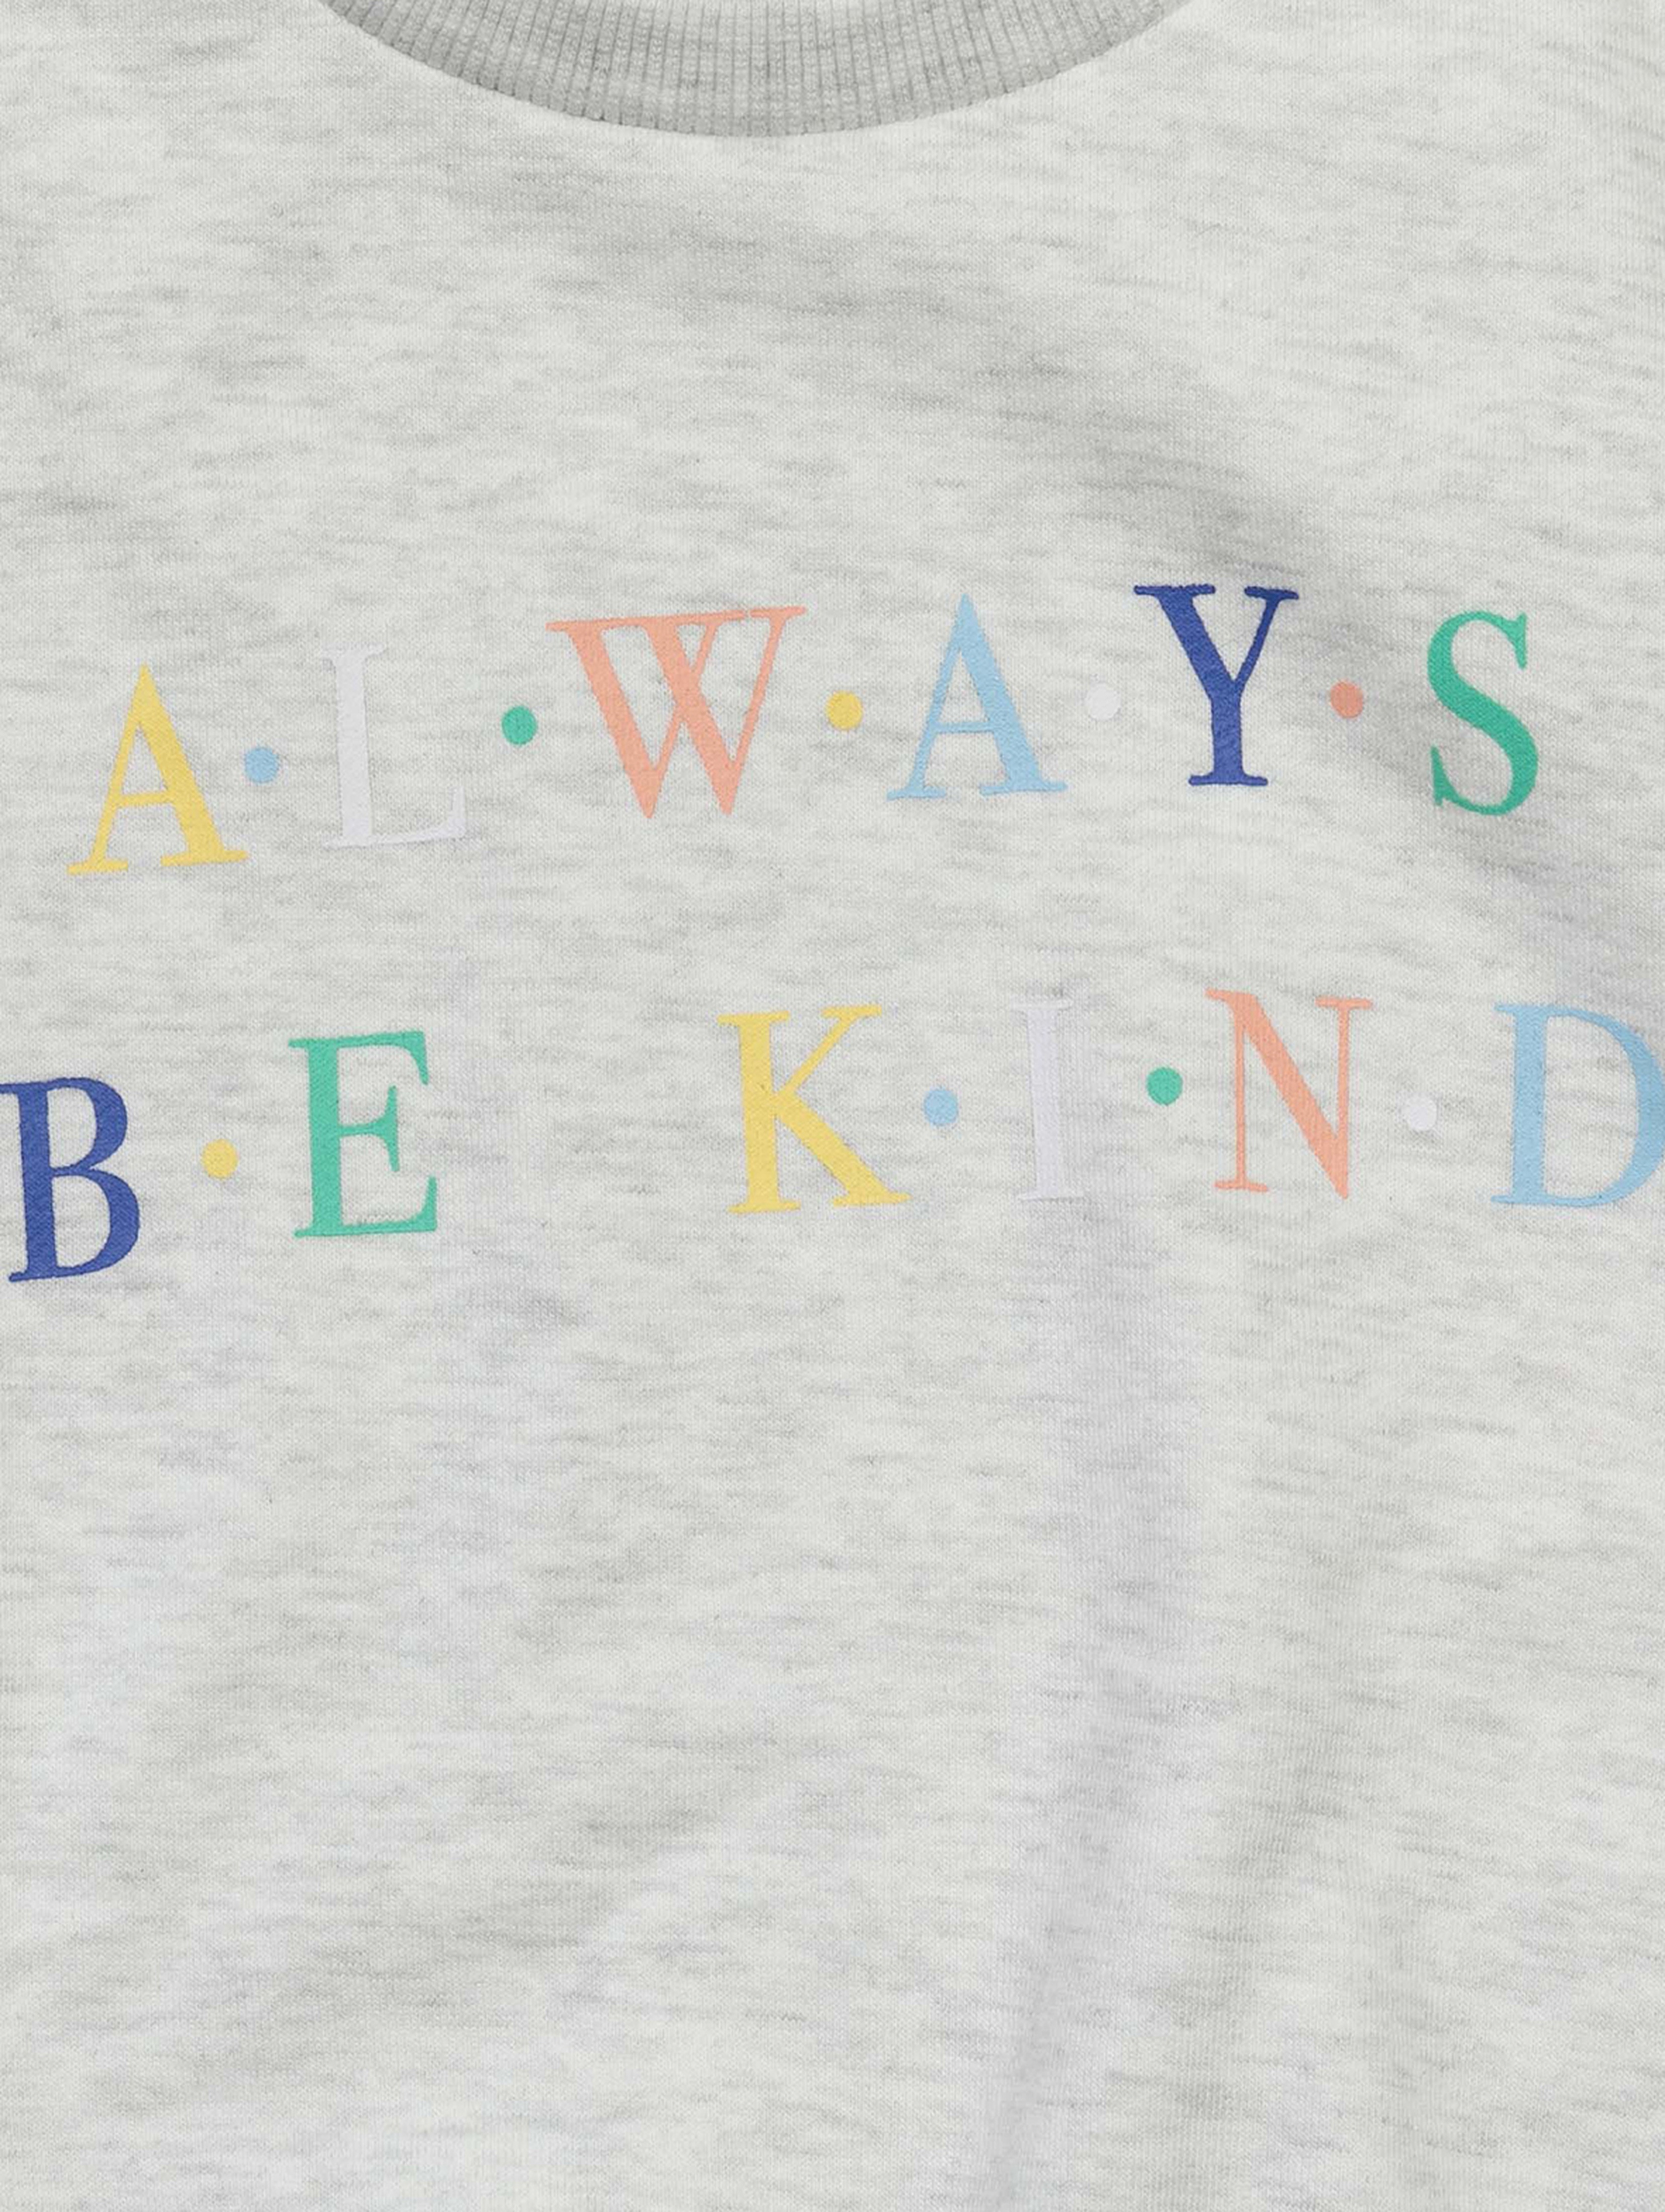 Szara bluza dziewczęca z napisem Always be kind